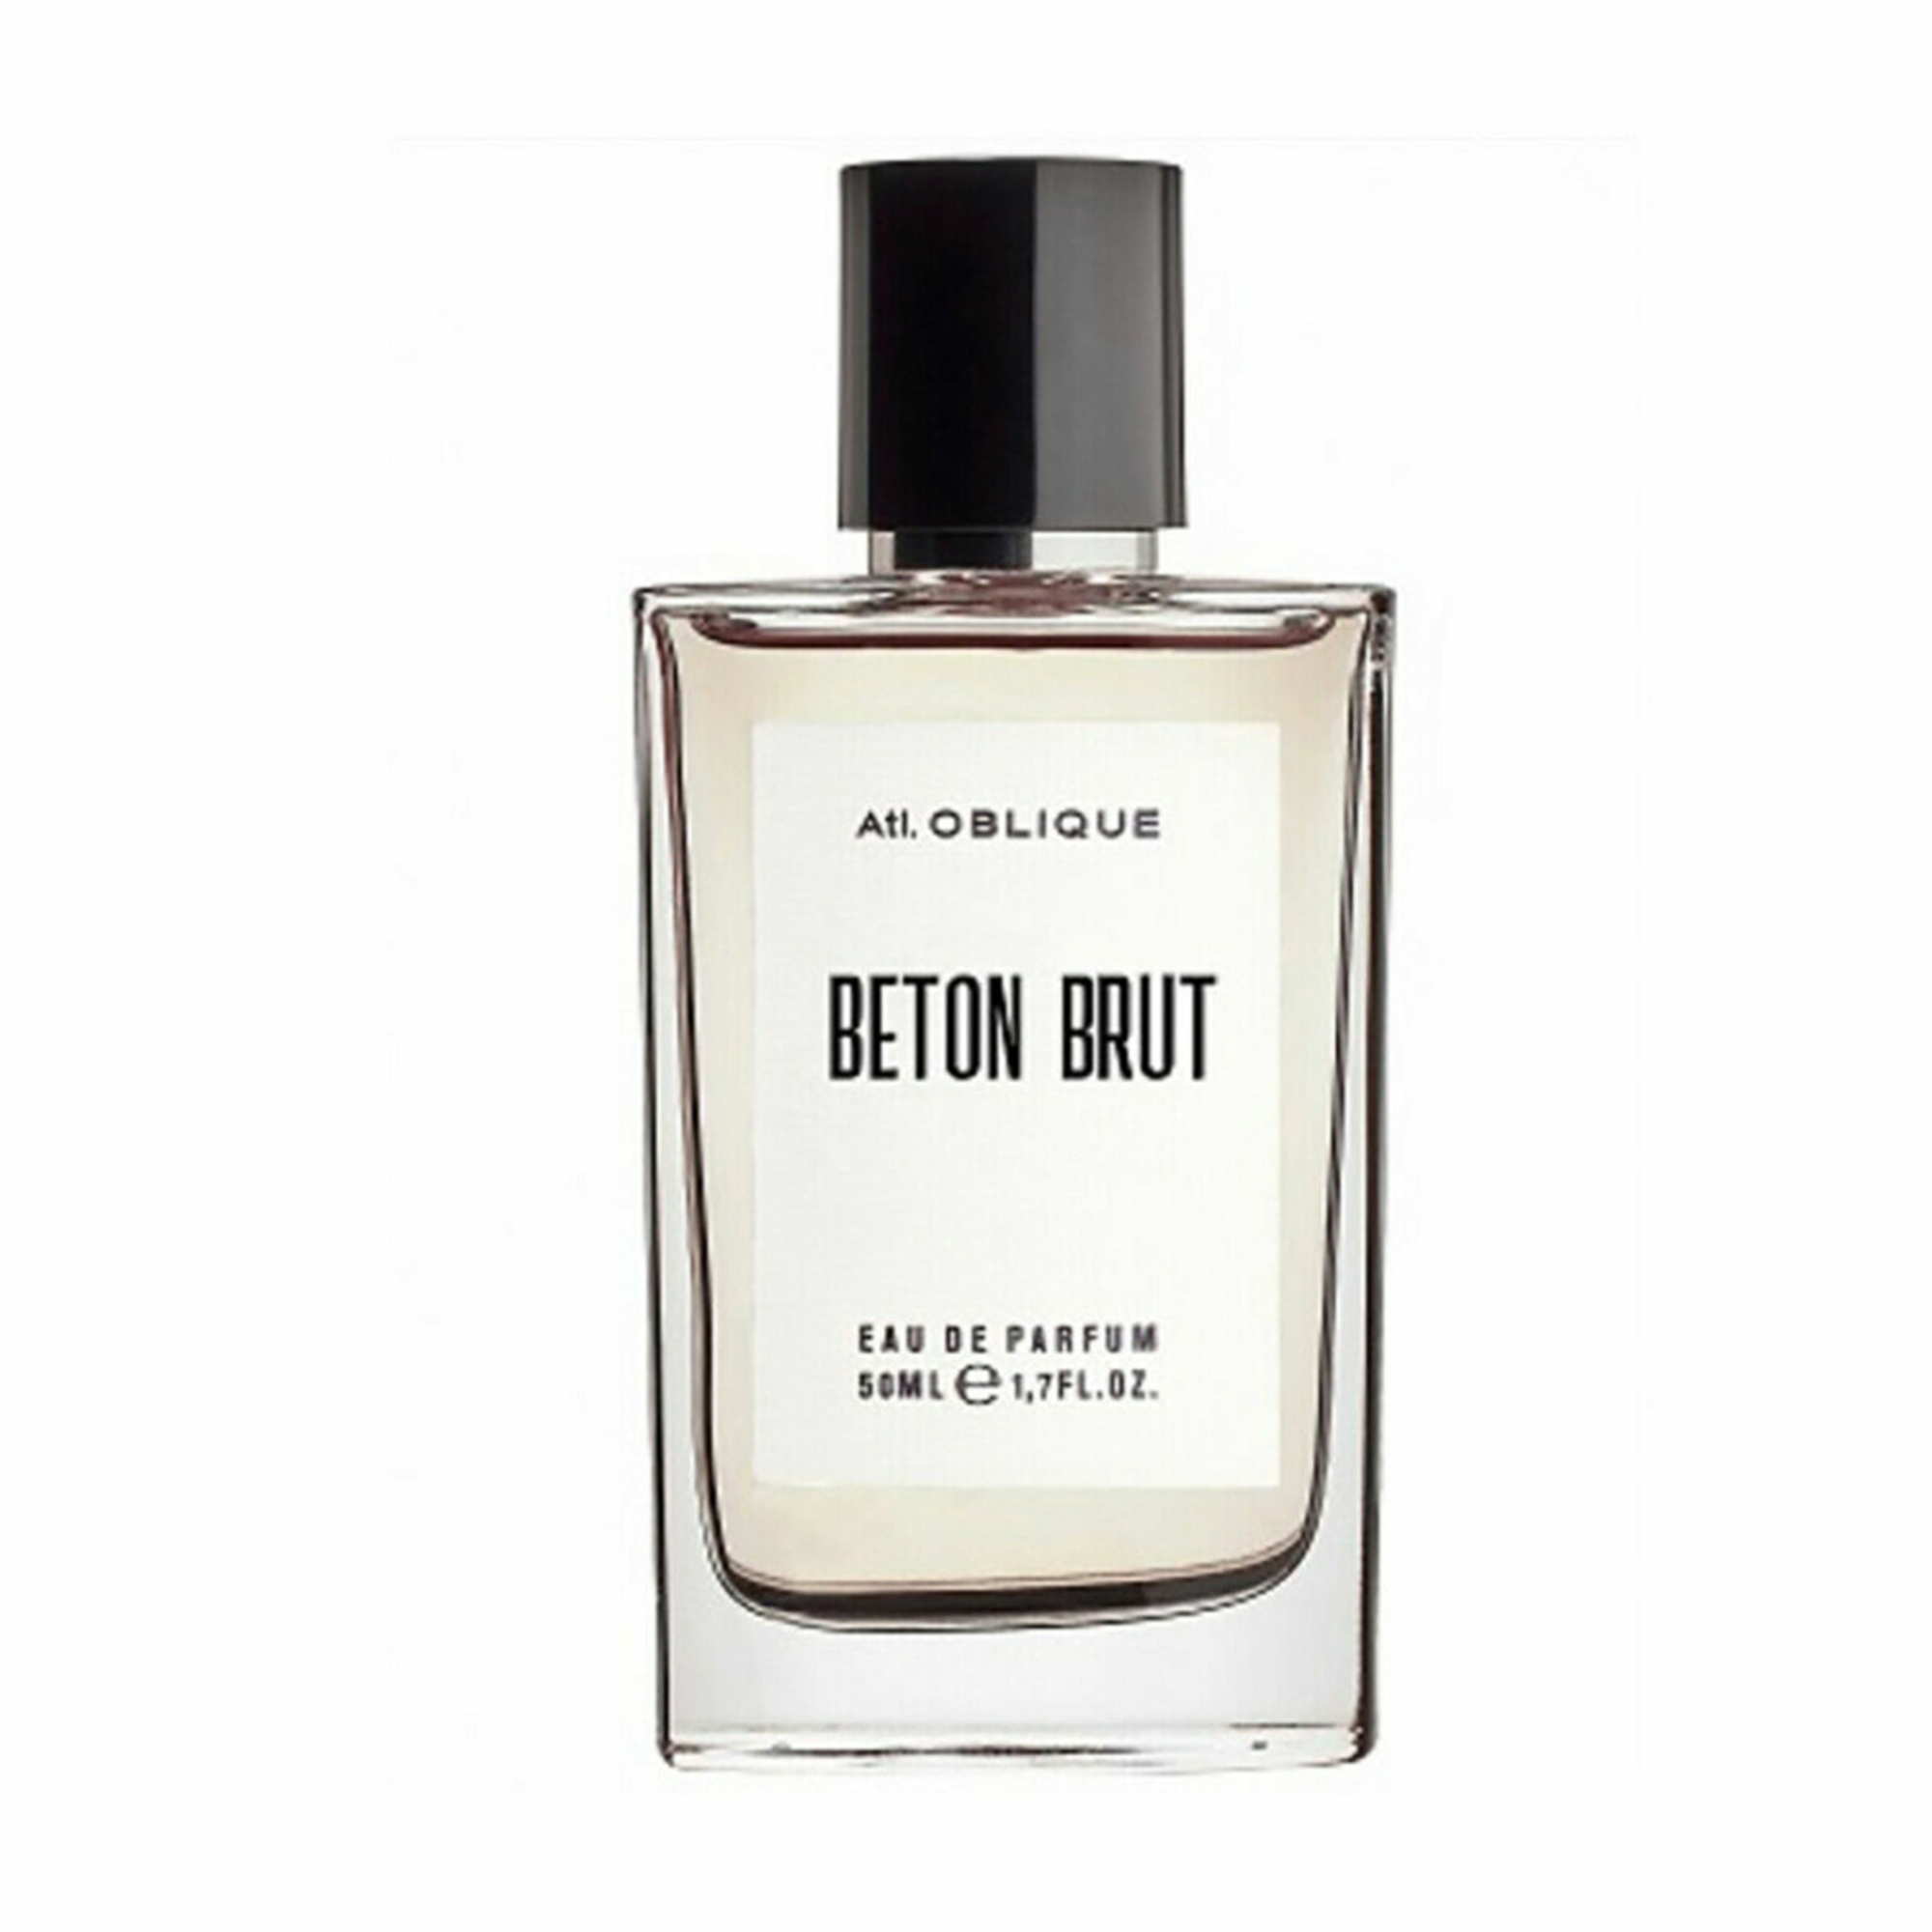 Atelier Oblique - Beton Brut Eau de Parfum 50 ml